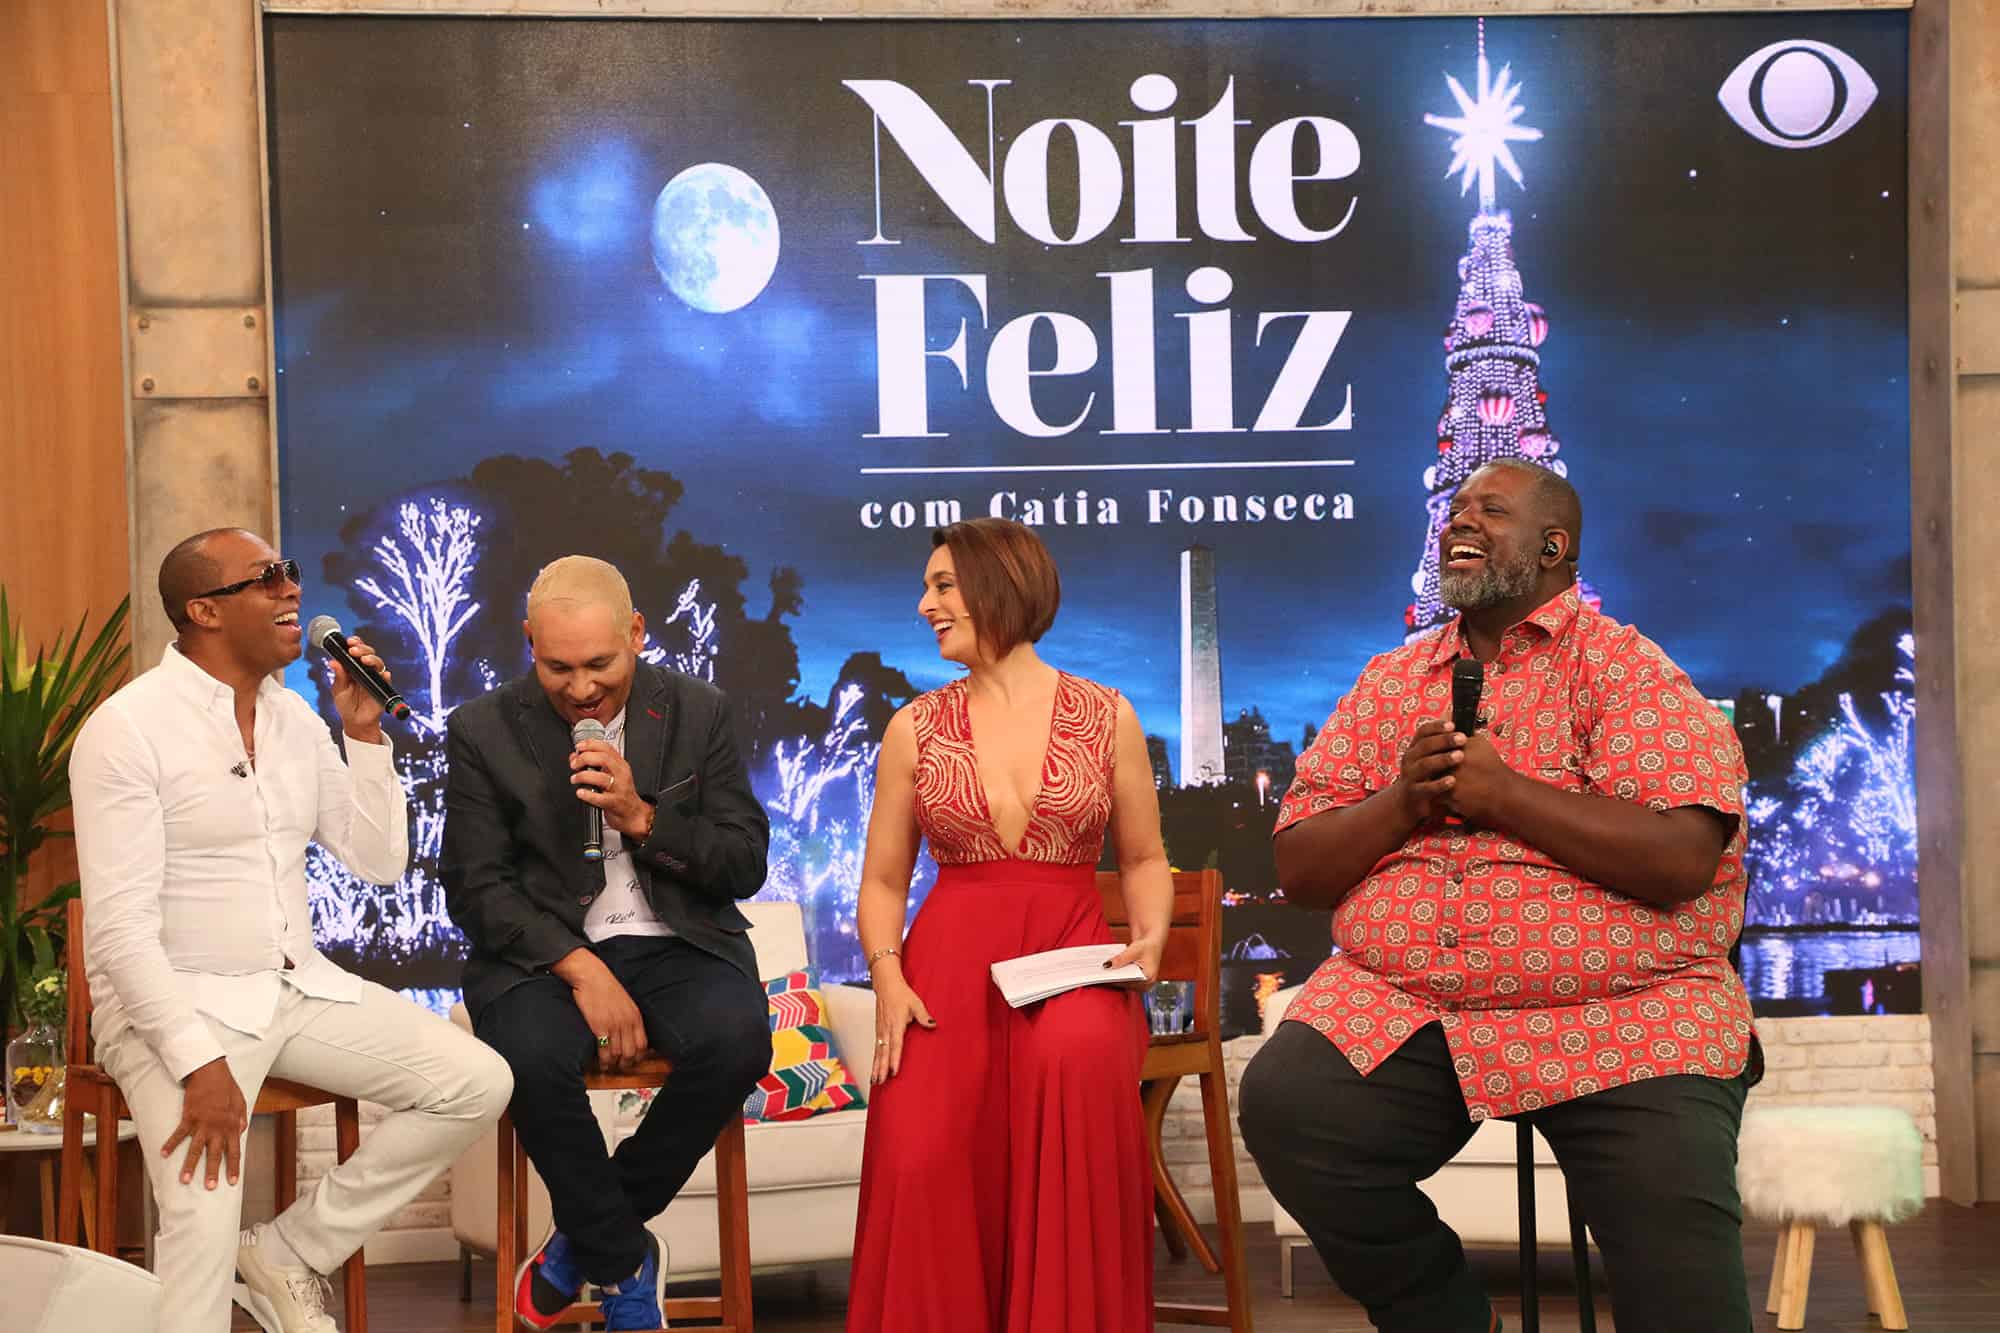 Noite Feliz: Band exibe especial com Cátia Fonseca e convidados na véspera de Natal